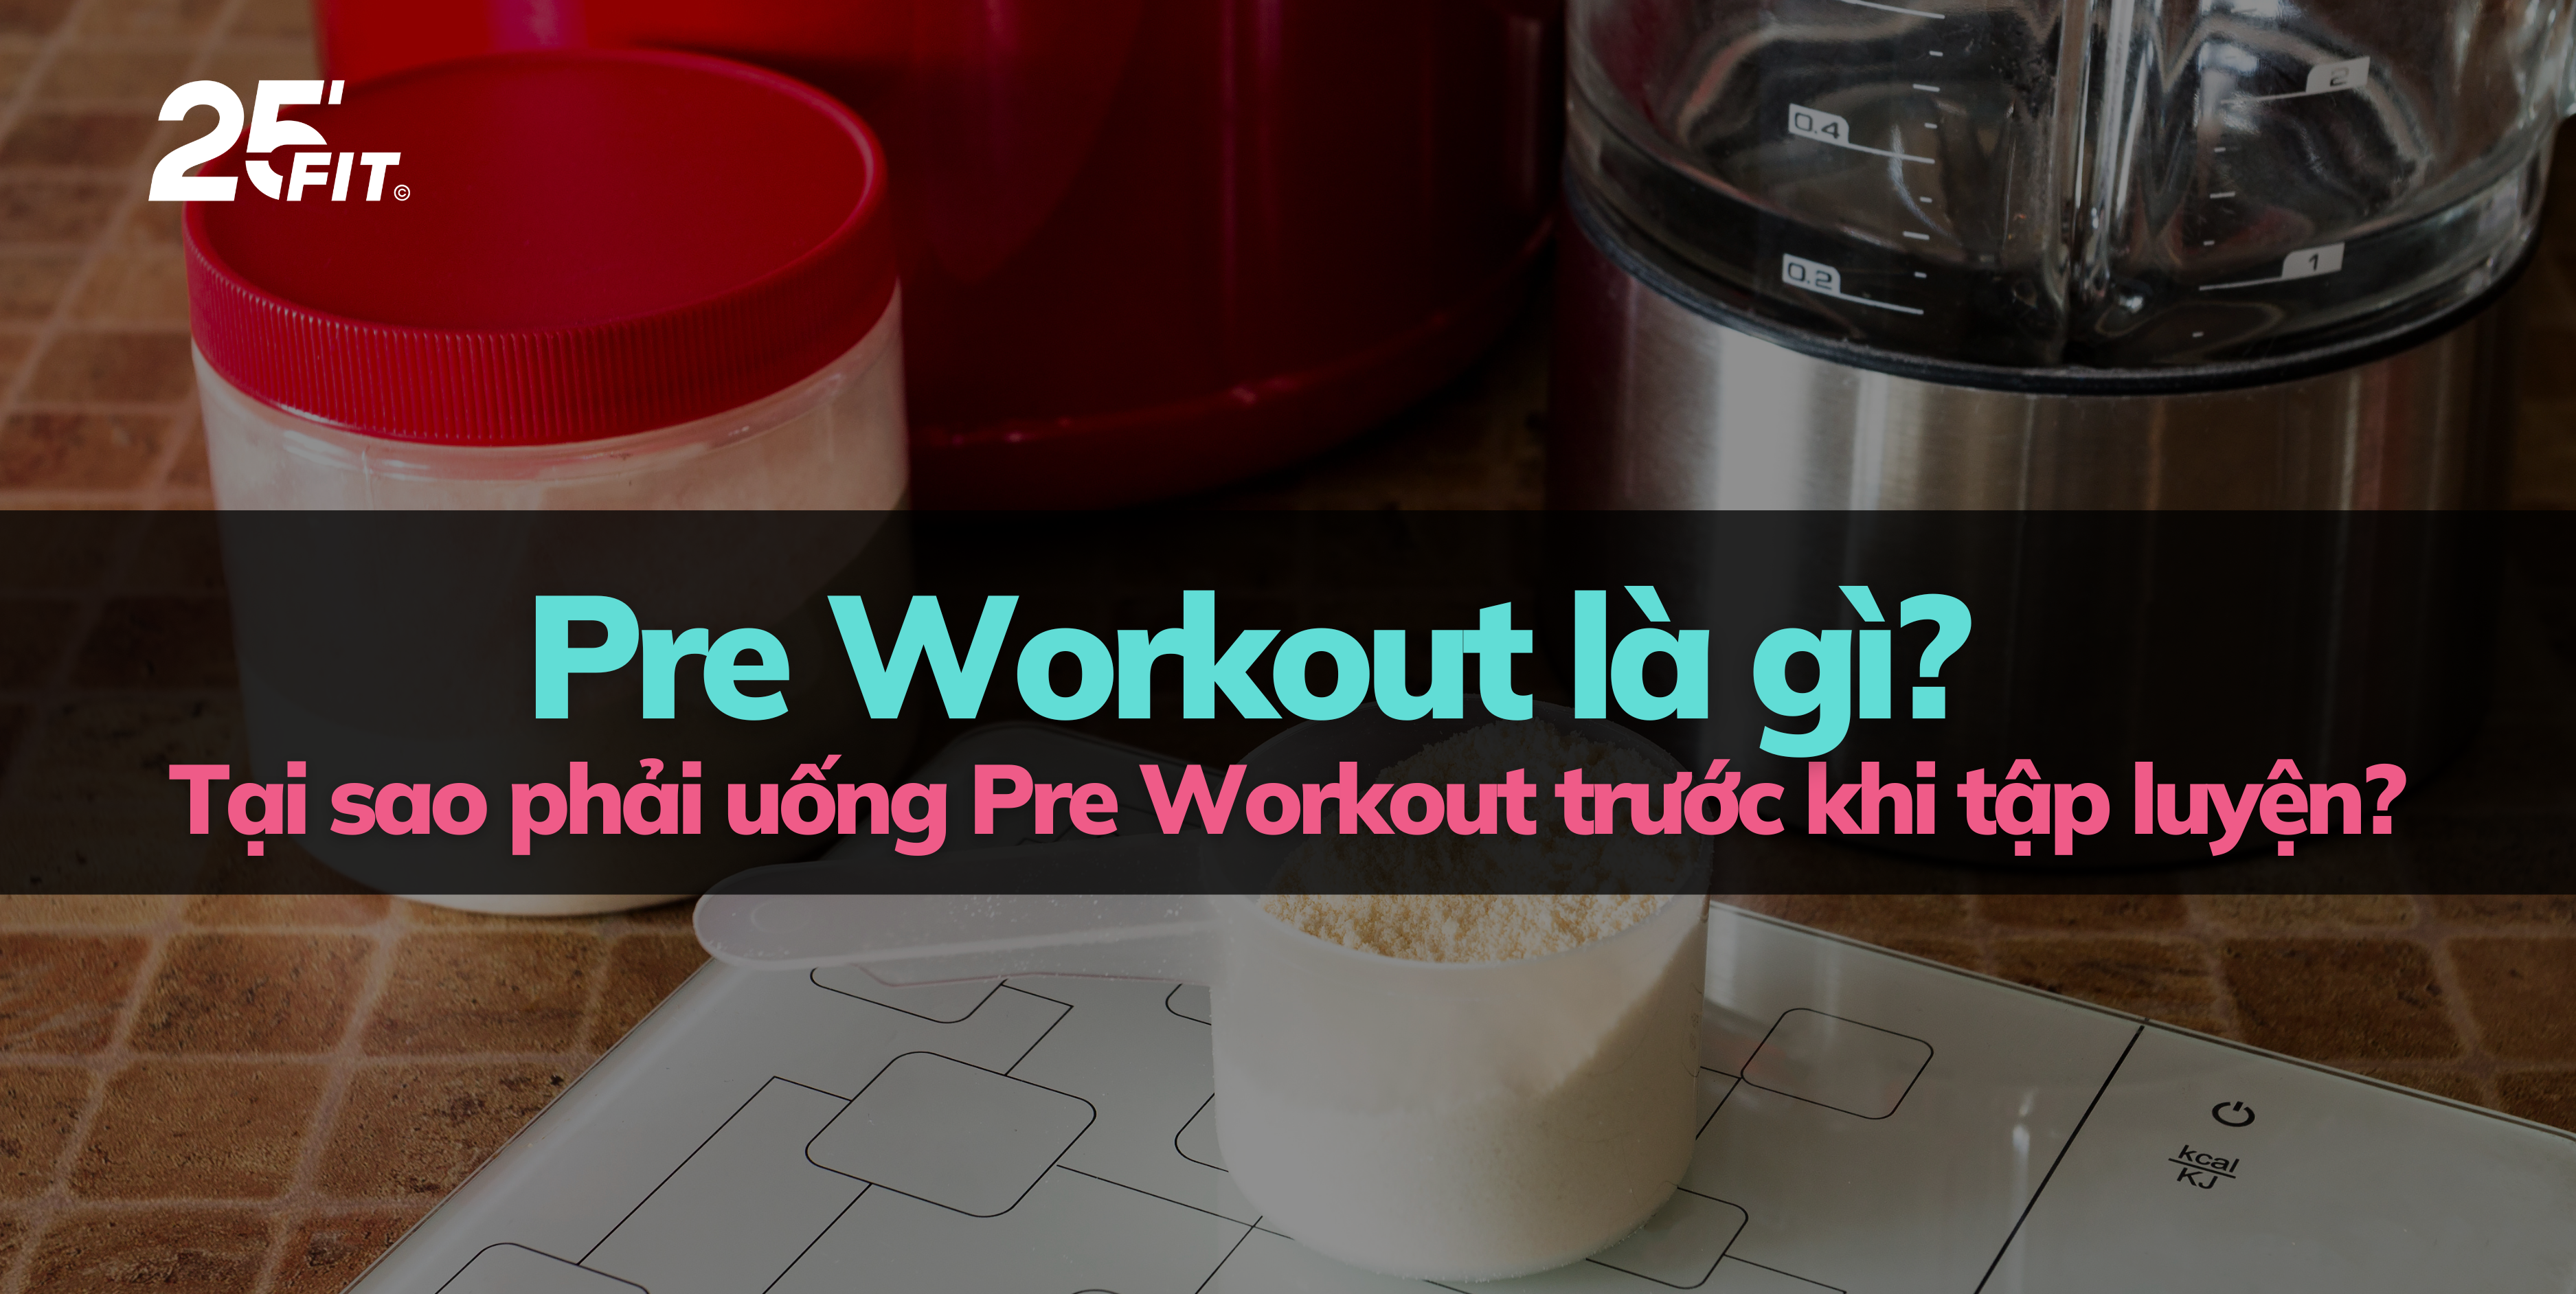 Pre Workout là gì? Tại sao phải uống Pre Workout trước khi tập luyện?